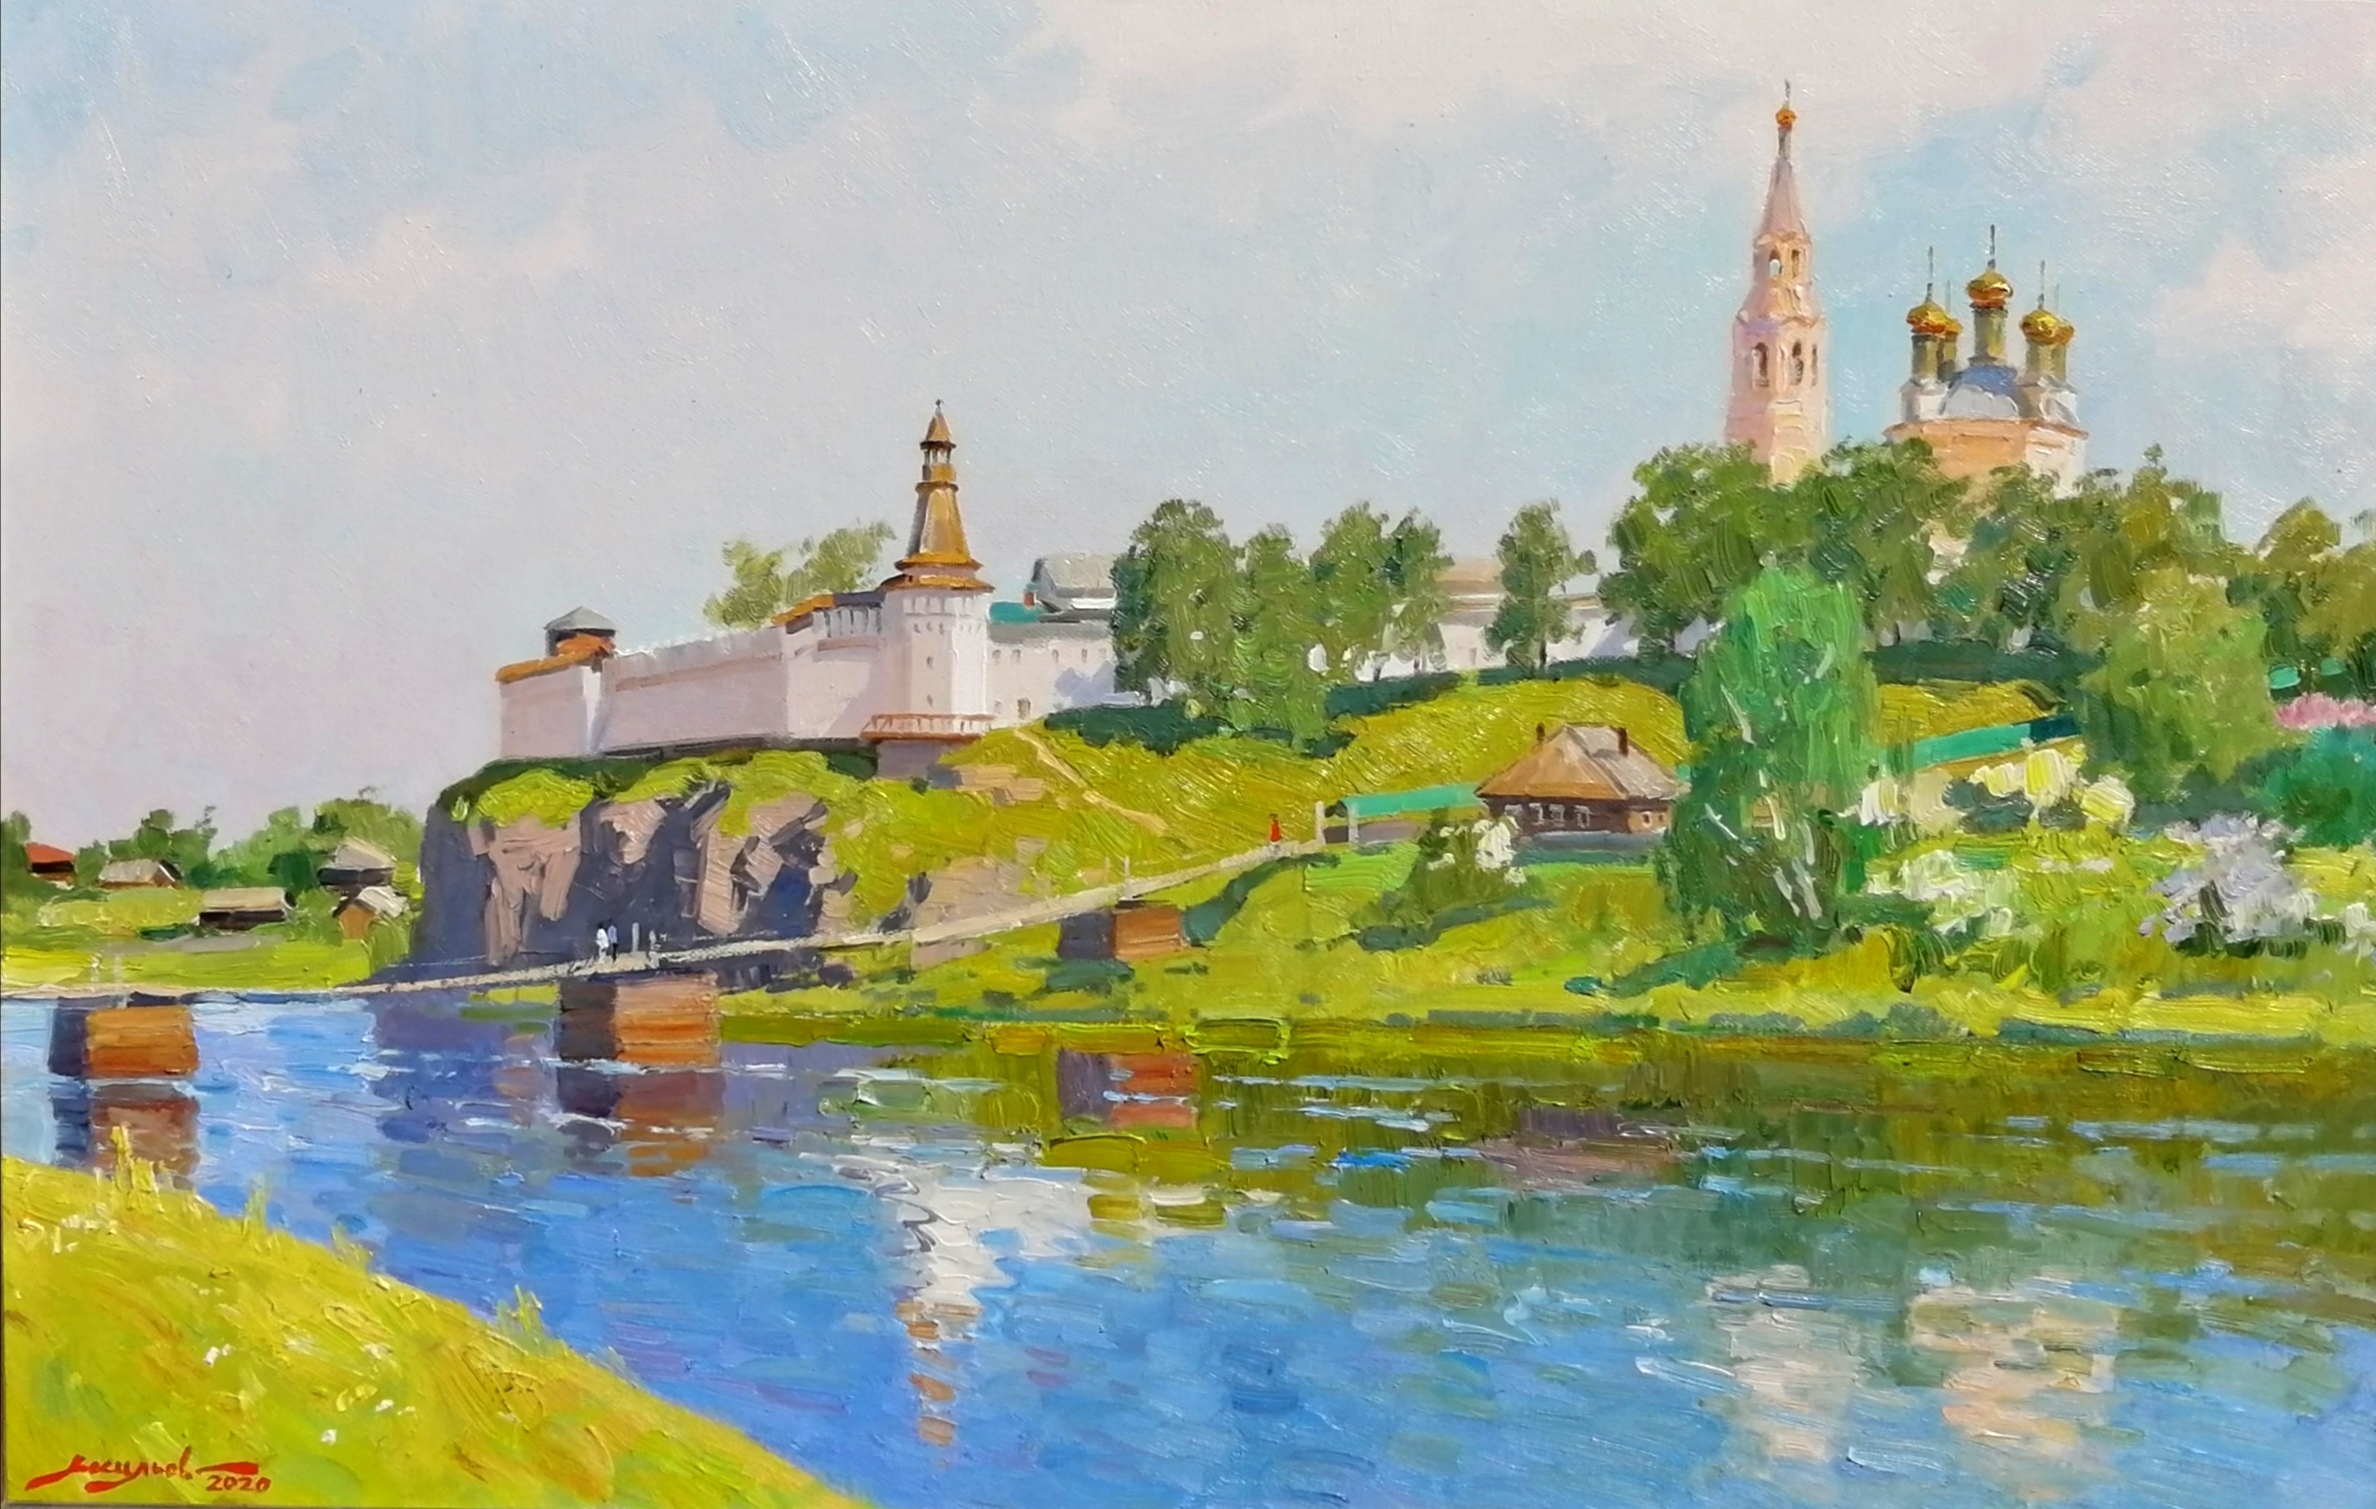 A hot afternoon. Verkhoturye - 1, Dmitry Vasiliev, Buy the painting Oil